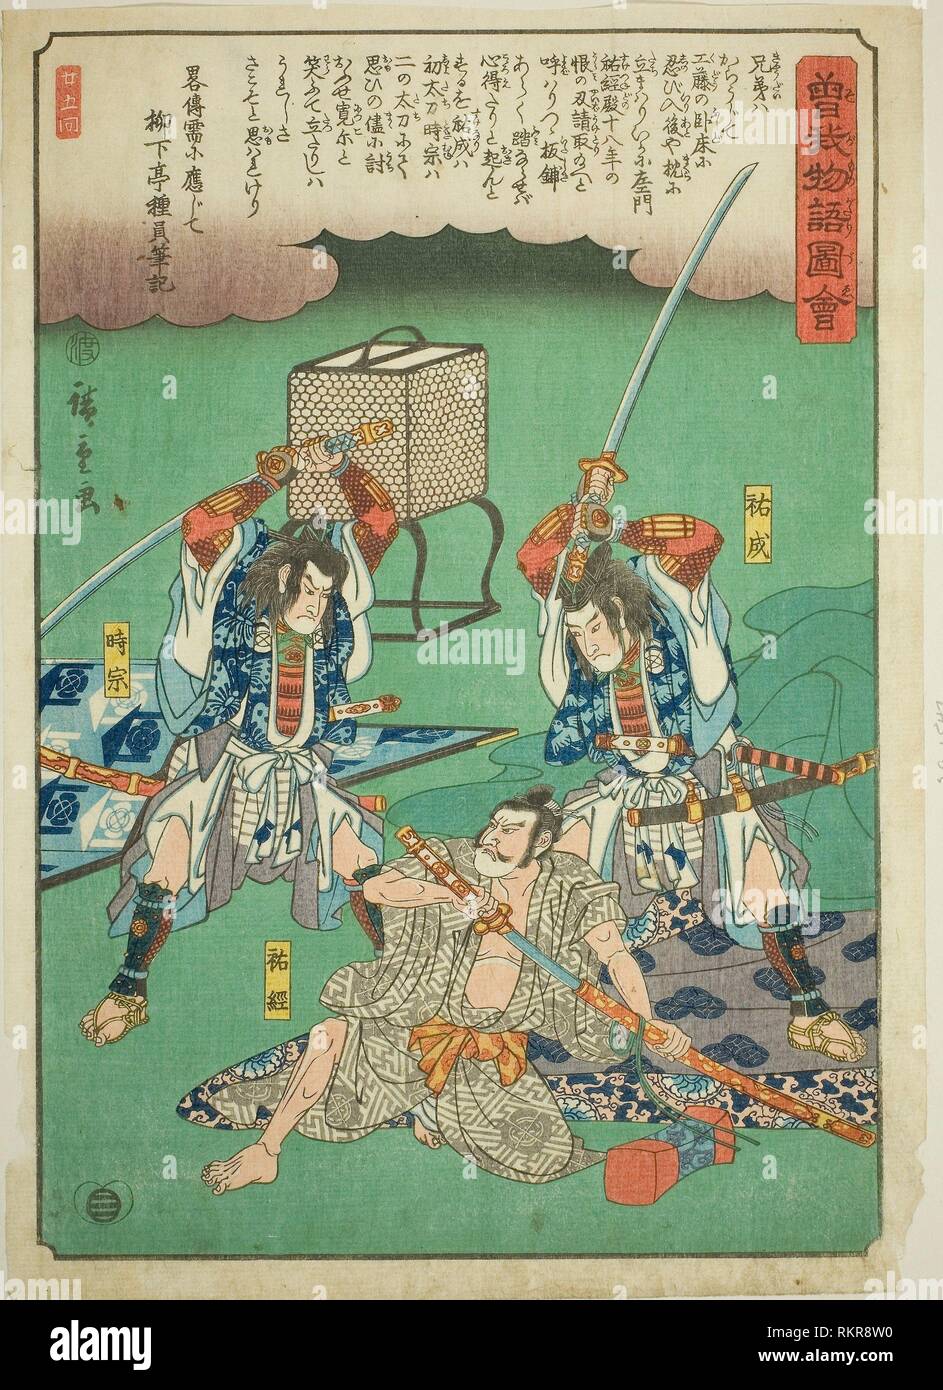 Sukenari (Soga no Juro) and Tokimune (Soga no Goro) assasinating